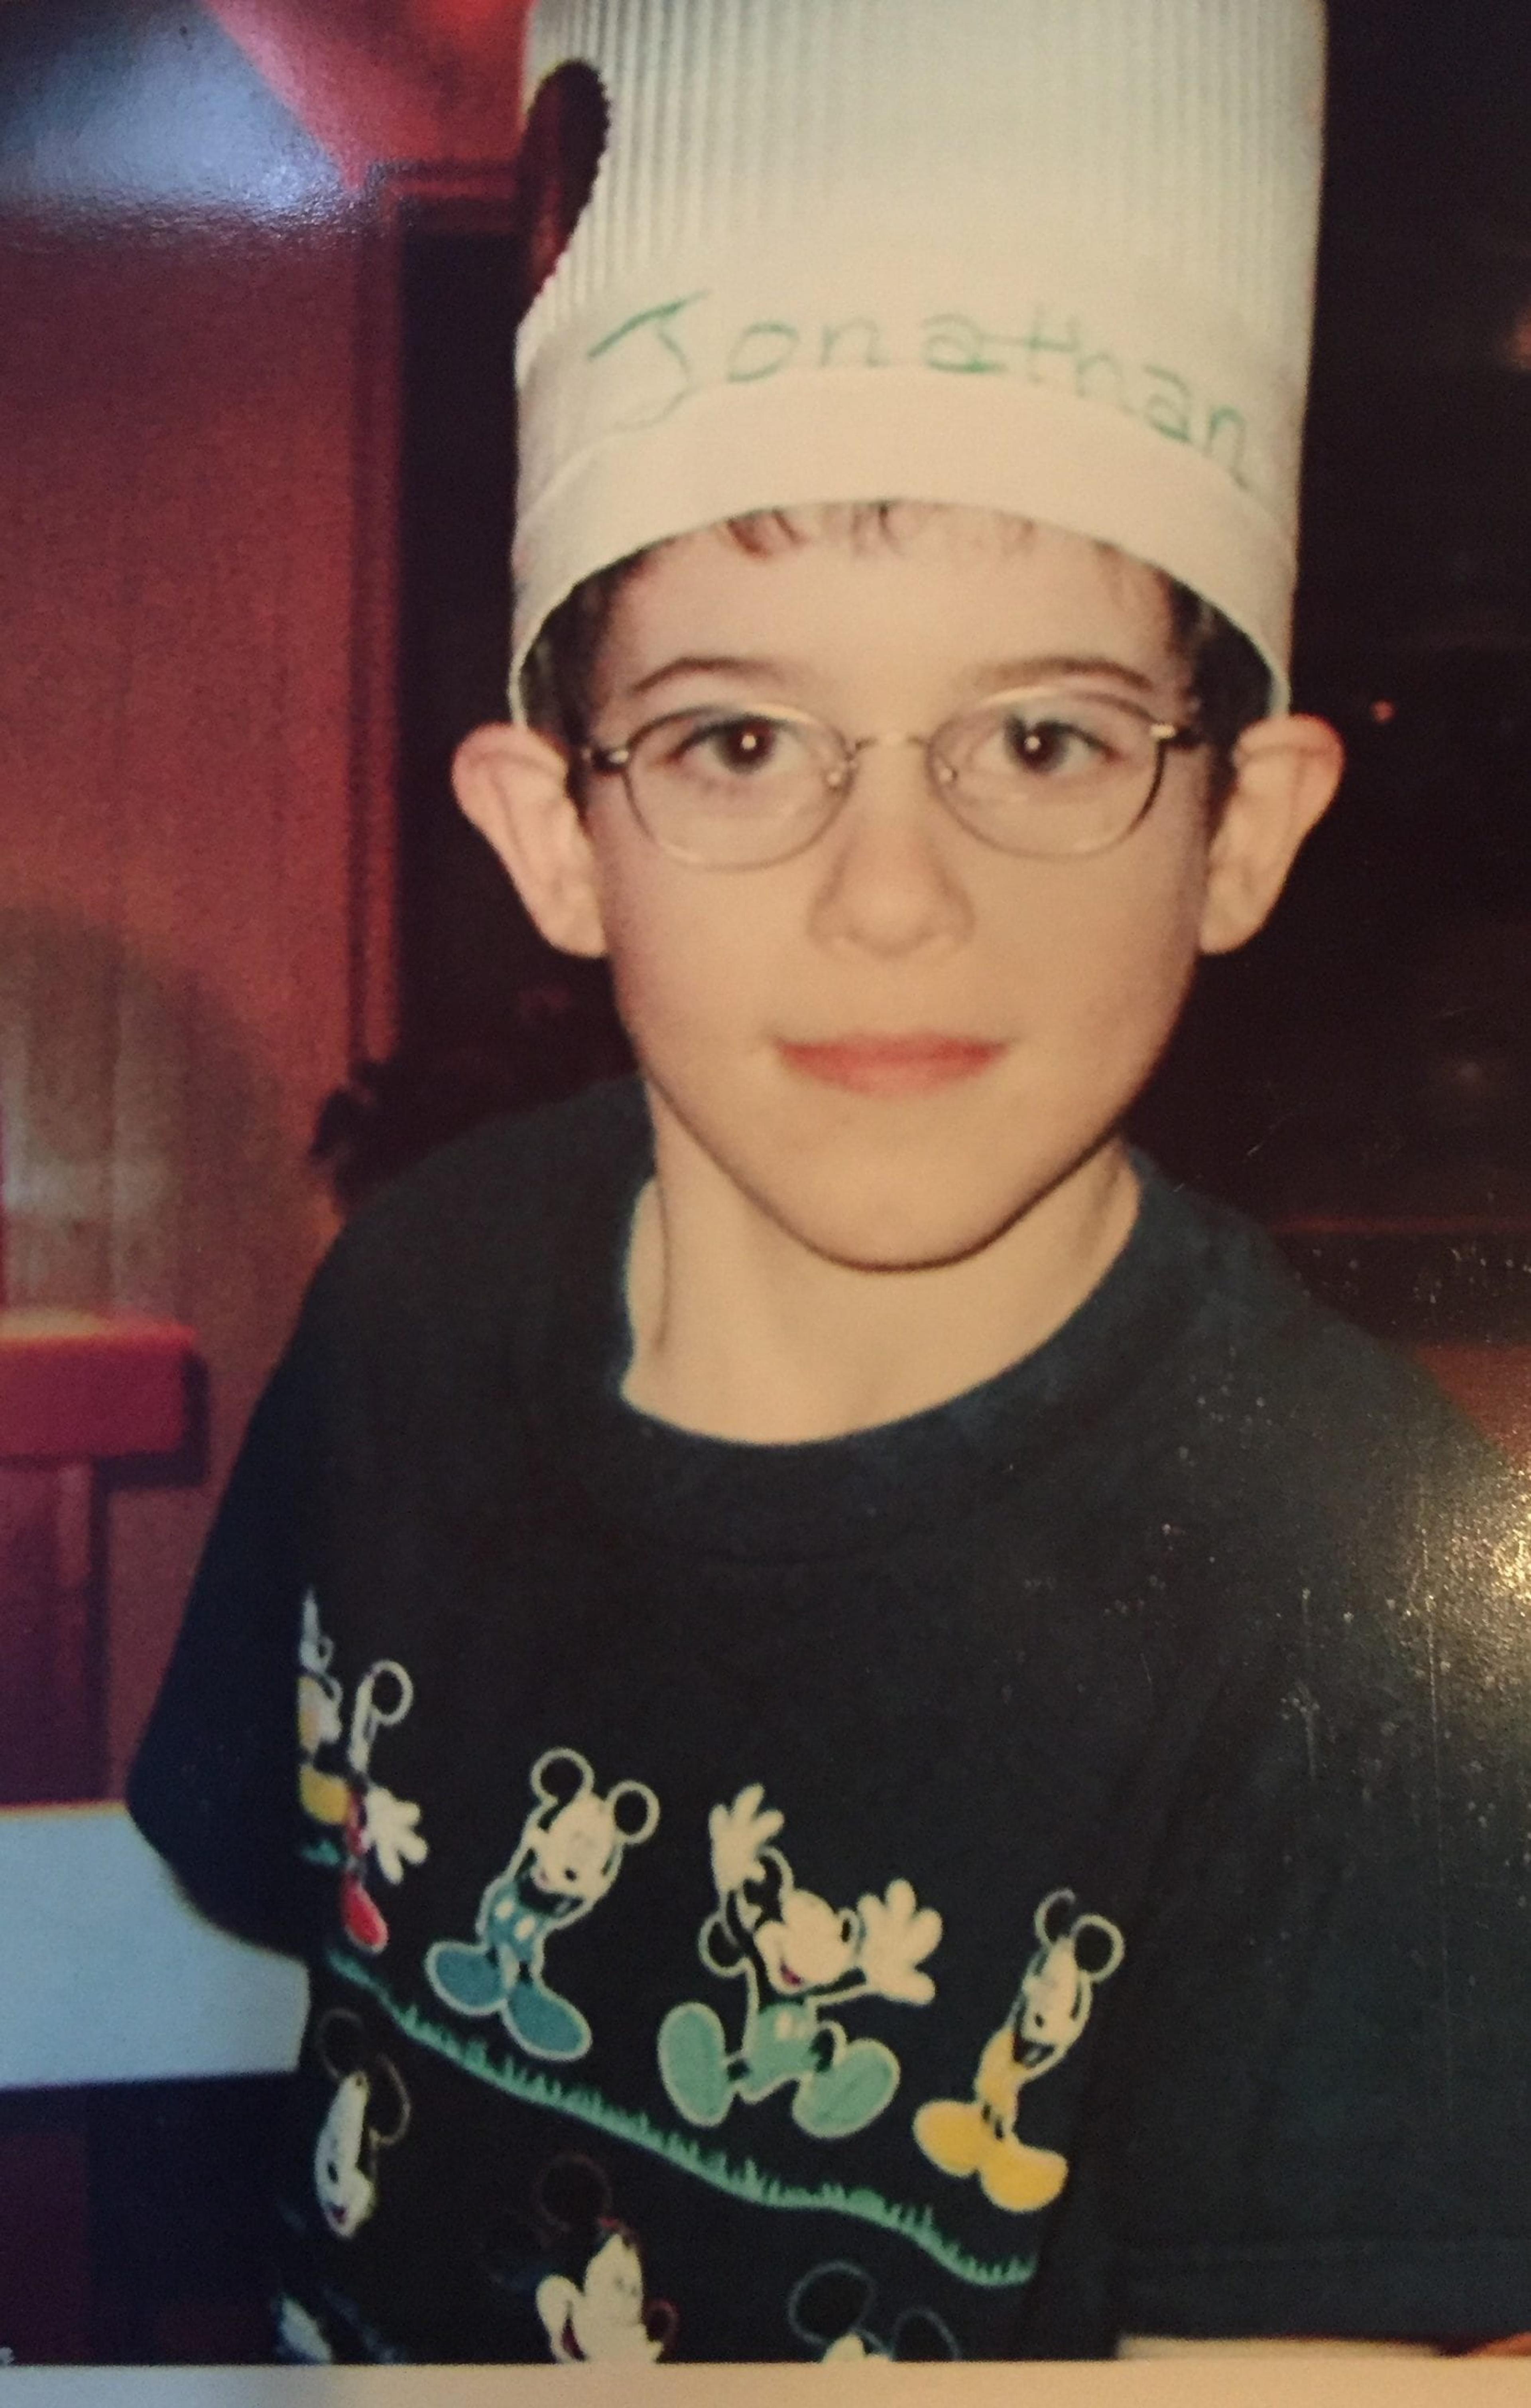 Jonathan at age 8